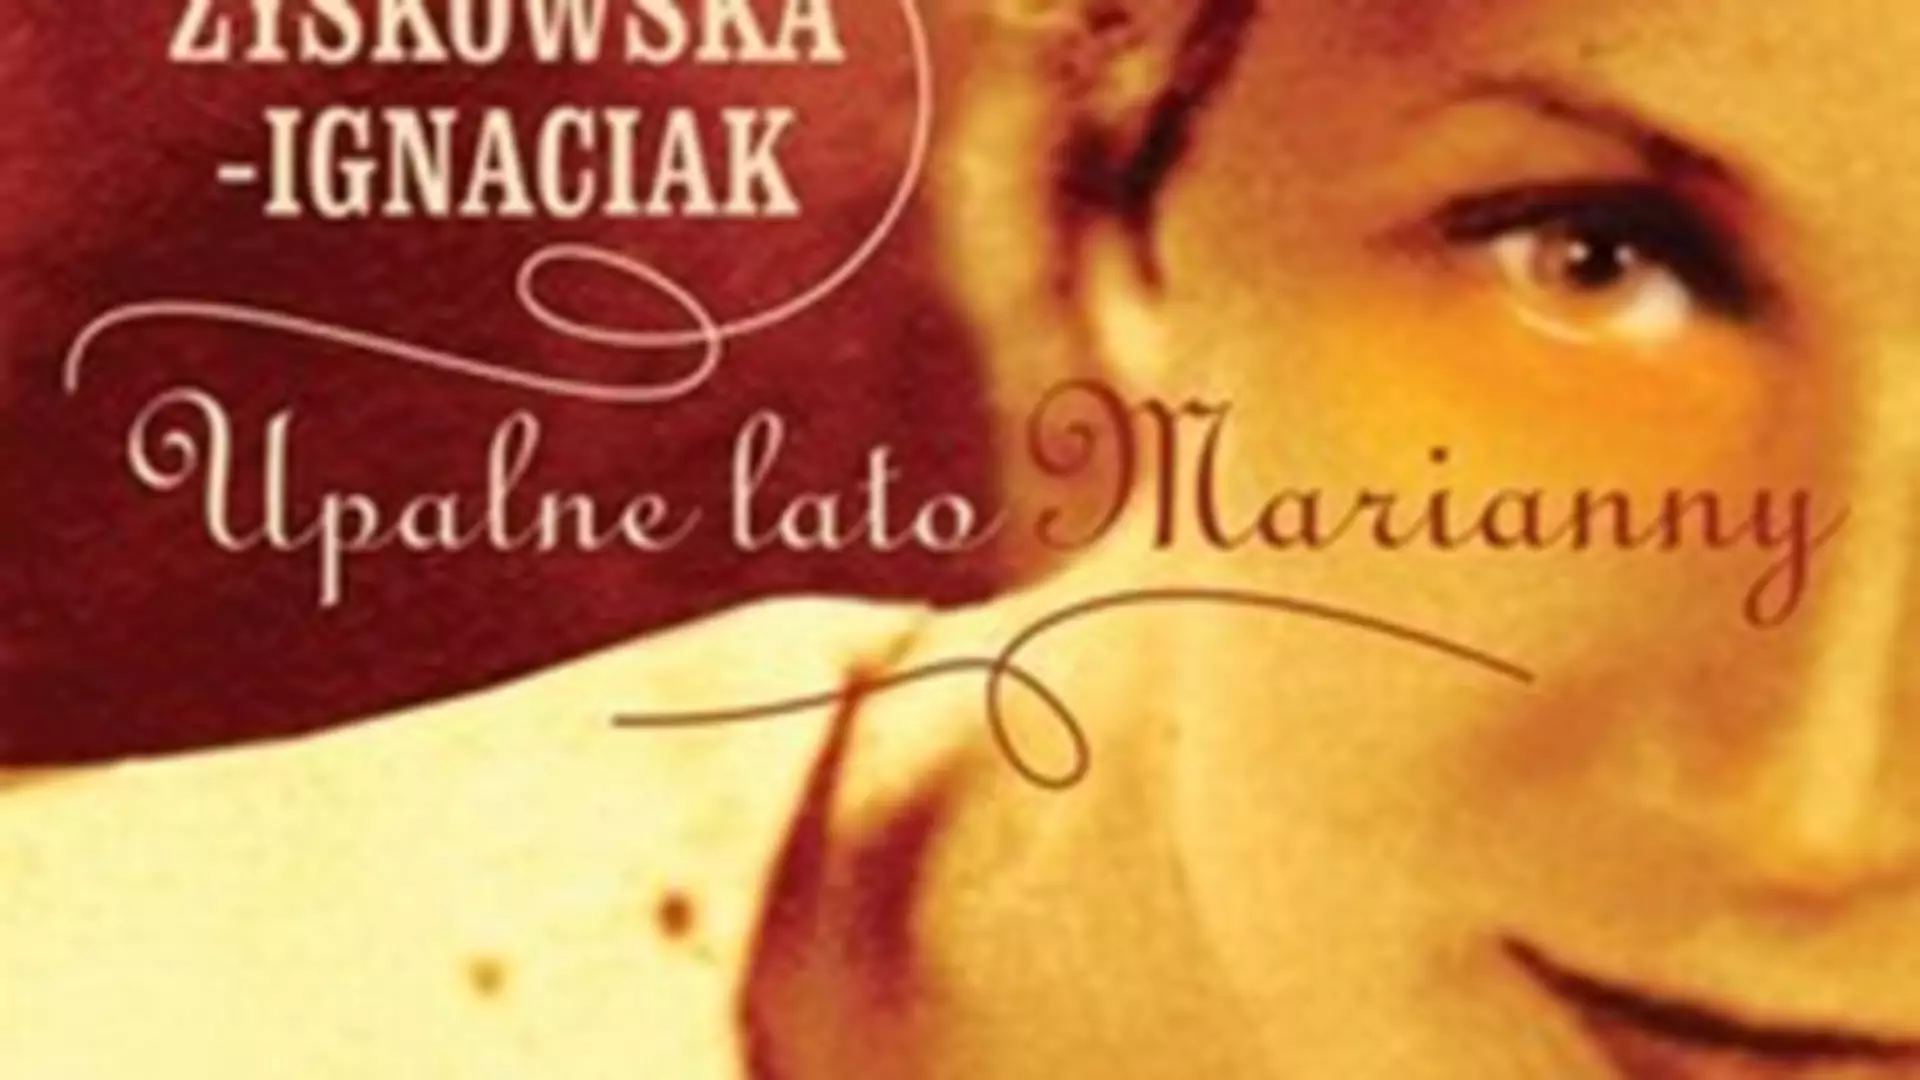 „Upalne lato Marianny” - dla kobiet o młodym sercu!